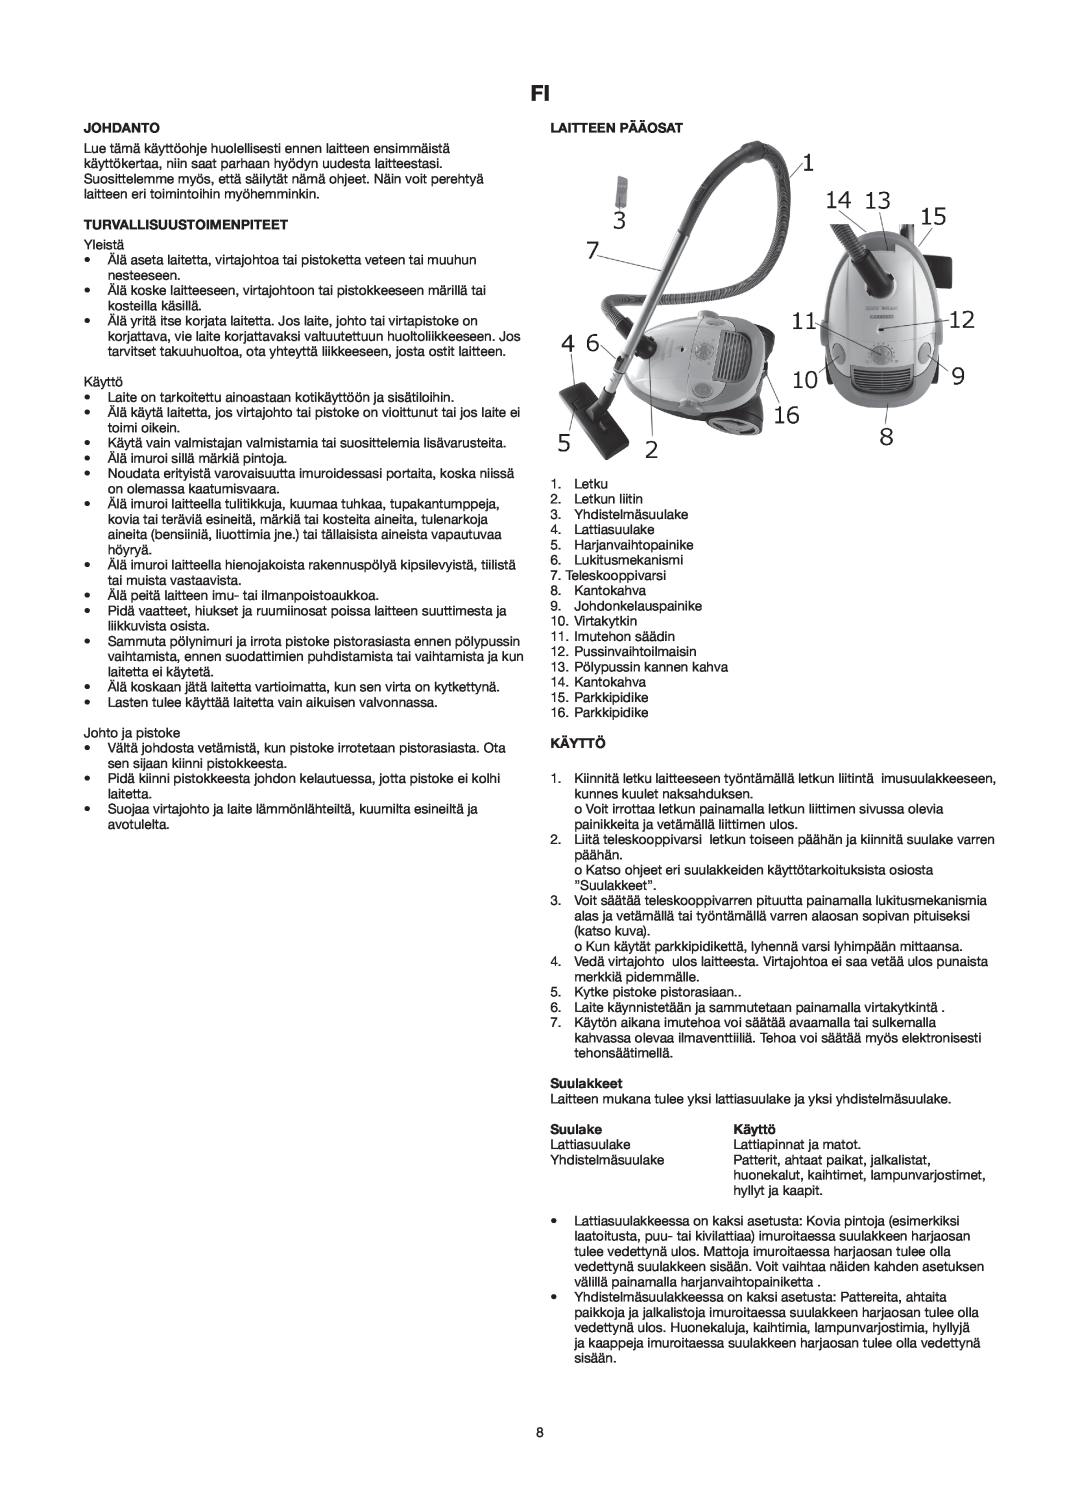 Melissa 640-141 manual Johdanto, Turvallisuustoimenpiteet, Laitteen Pääosat, Käyttö, Suulakkeet, Suulake 